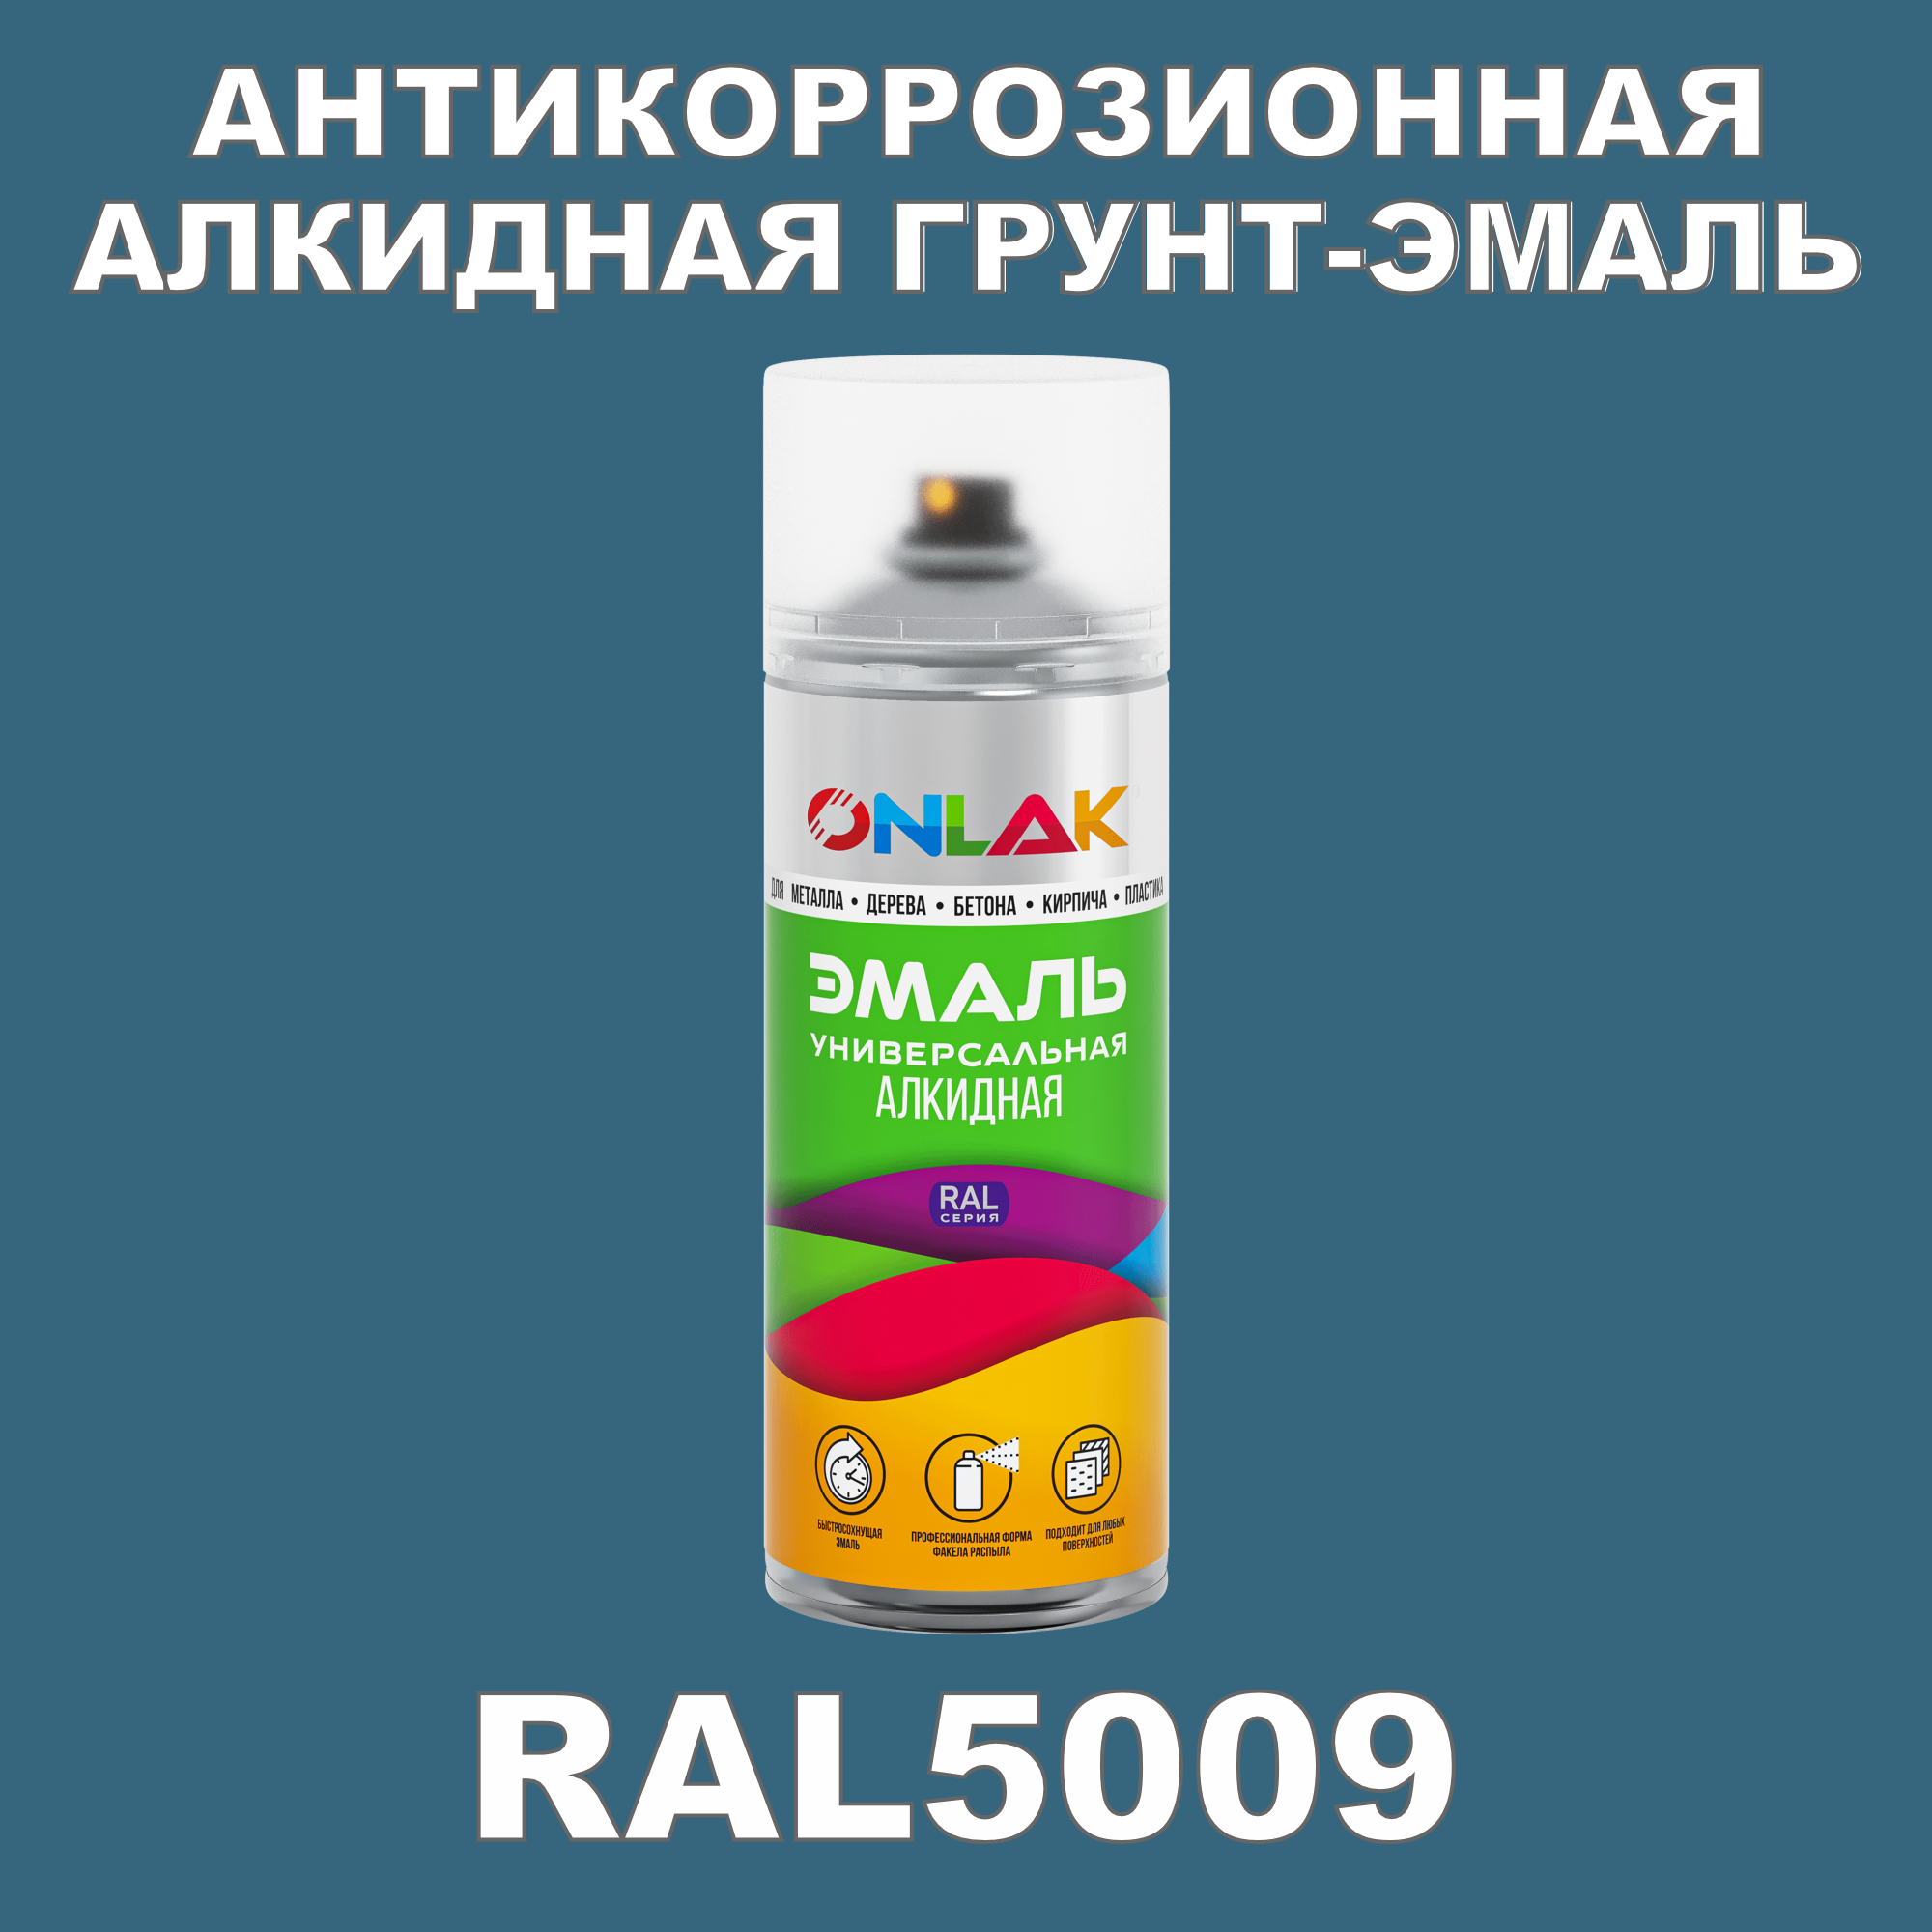 Антикоррозионная грунт-эмаль ONLAK RAL5009 матовая для металла и защиты от ржавчины